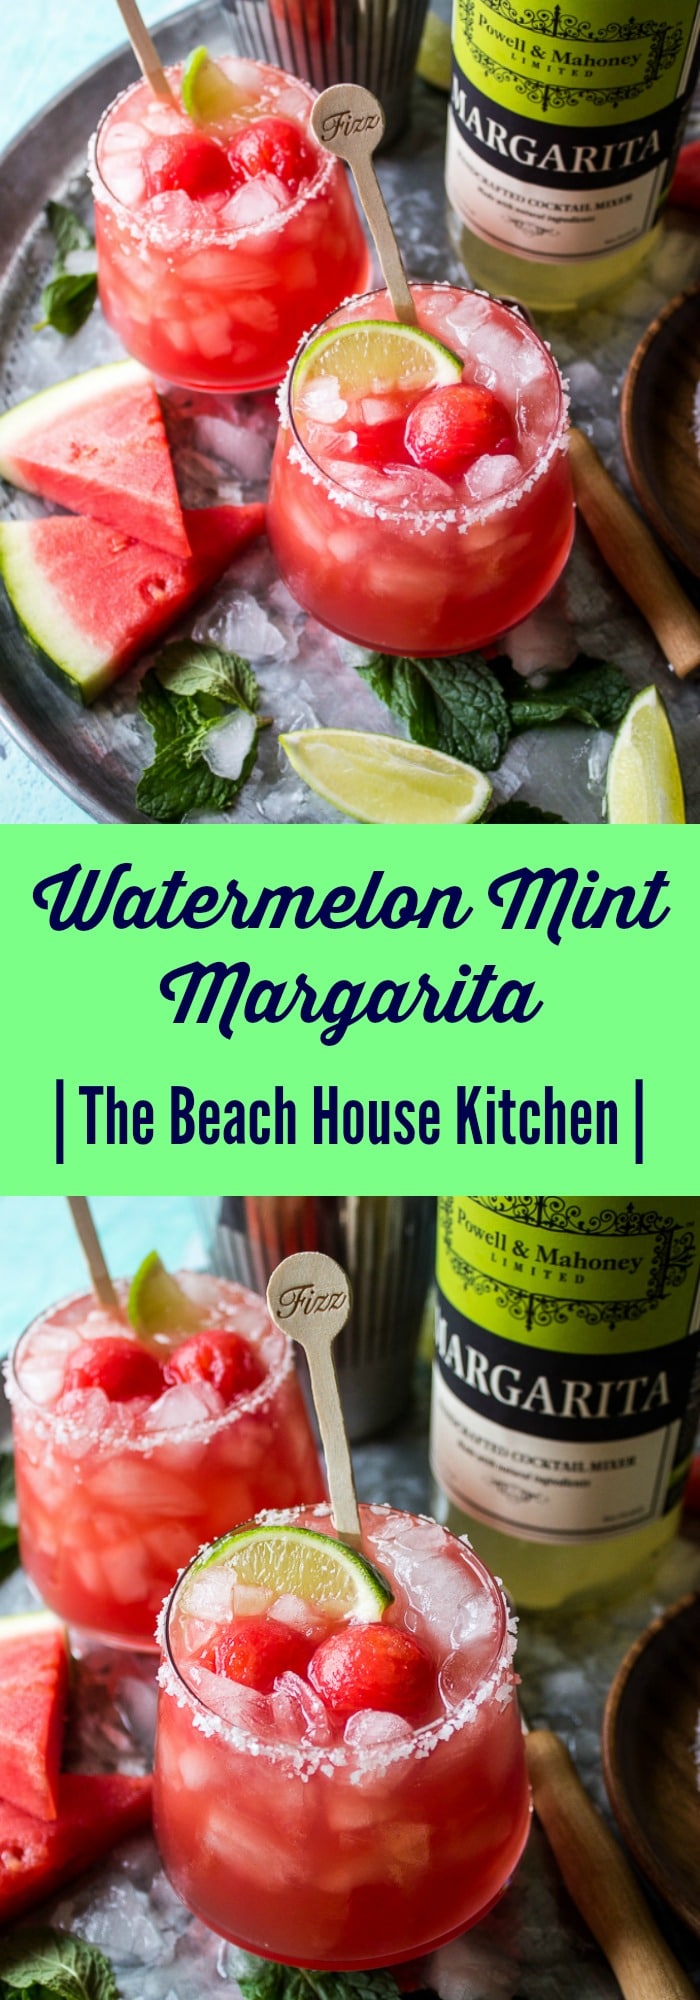 Watermelon Mint Margarita